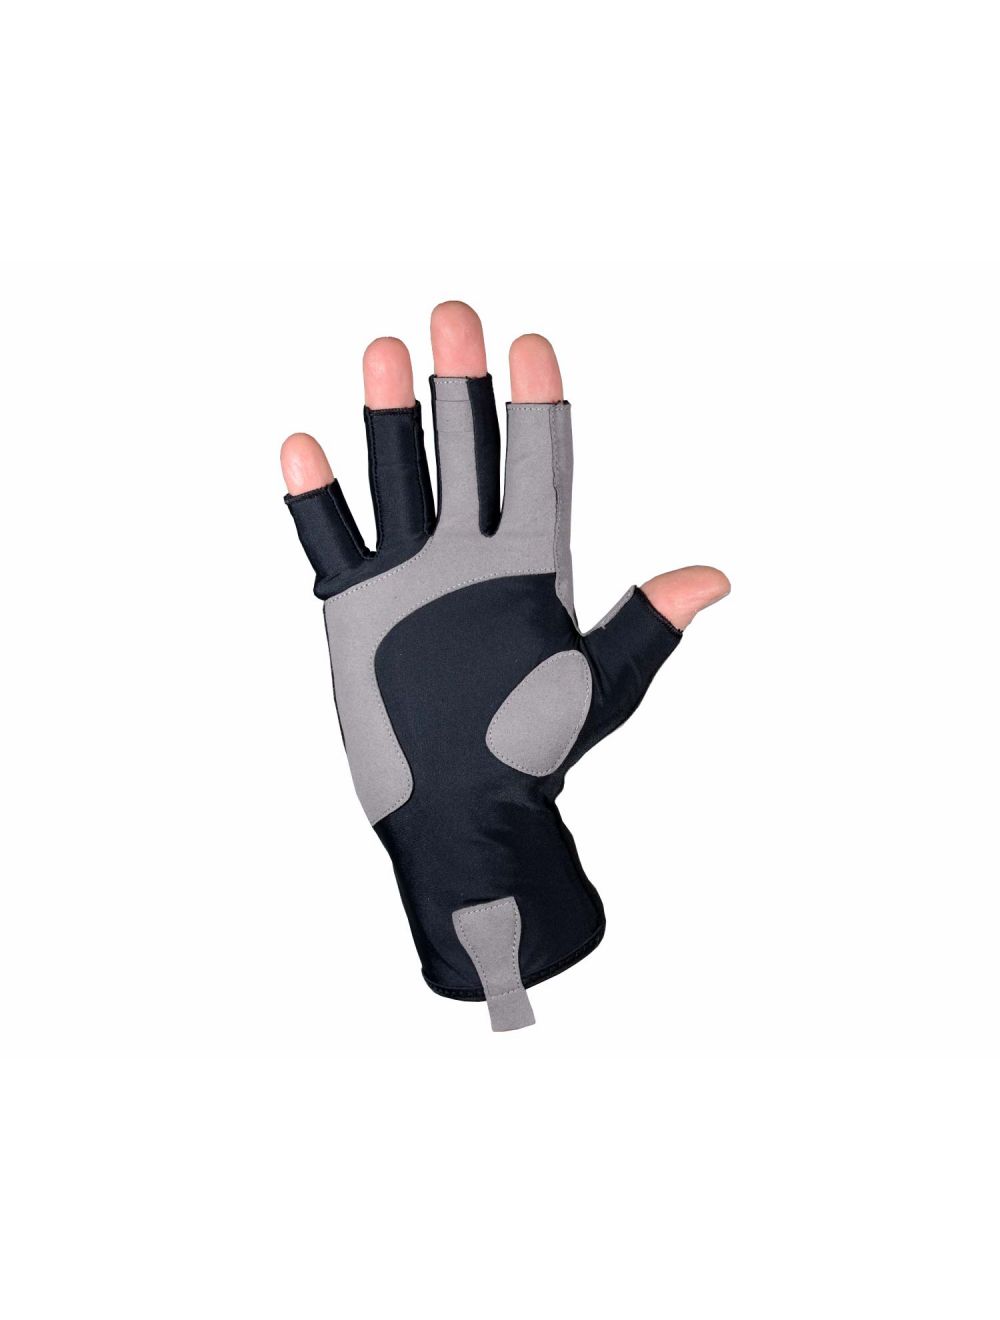 Specialist Glove - Fingerless